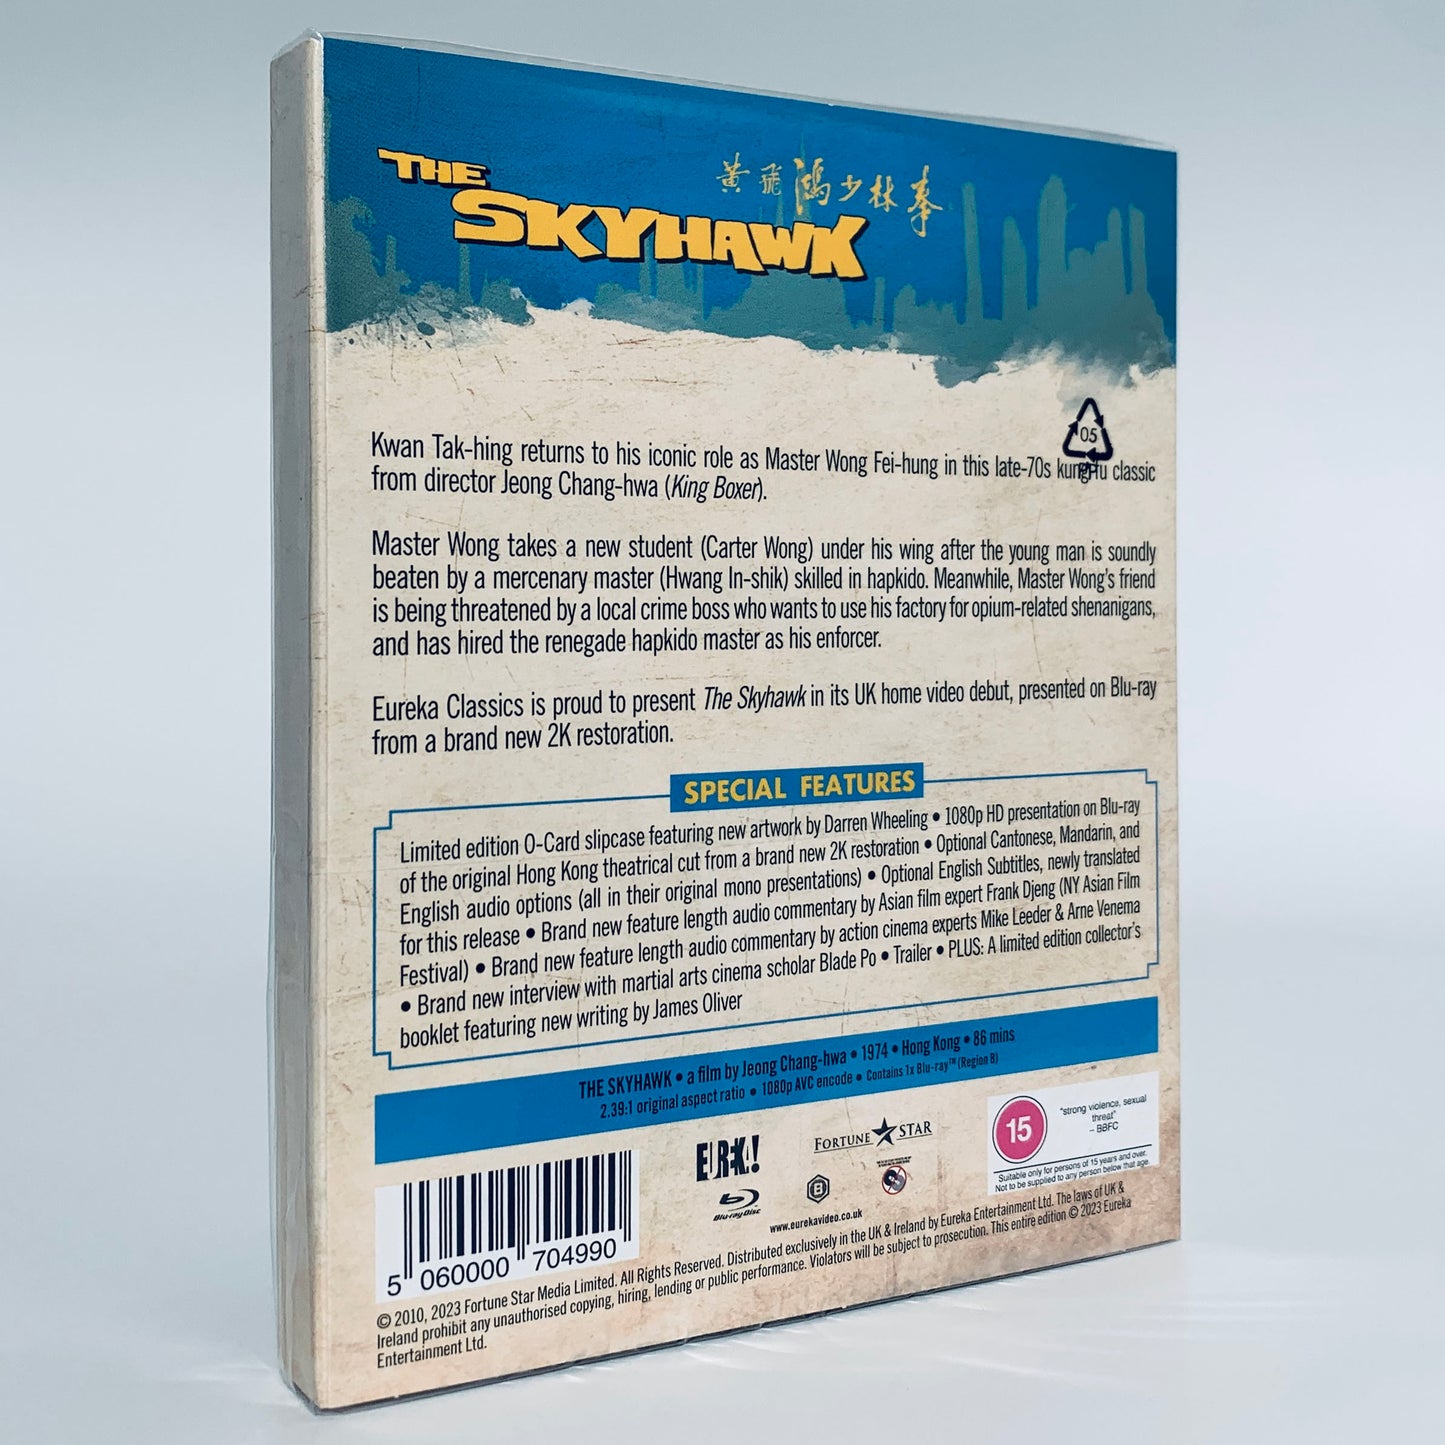 The Skyhawk Sky Hawk Carter Wong Nora Miao Sammo Hung Kwan Tak-hing Wong Fei-hung Blu-ray Eureka